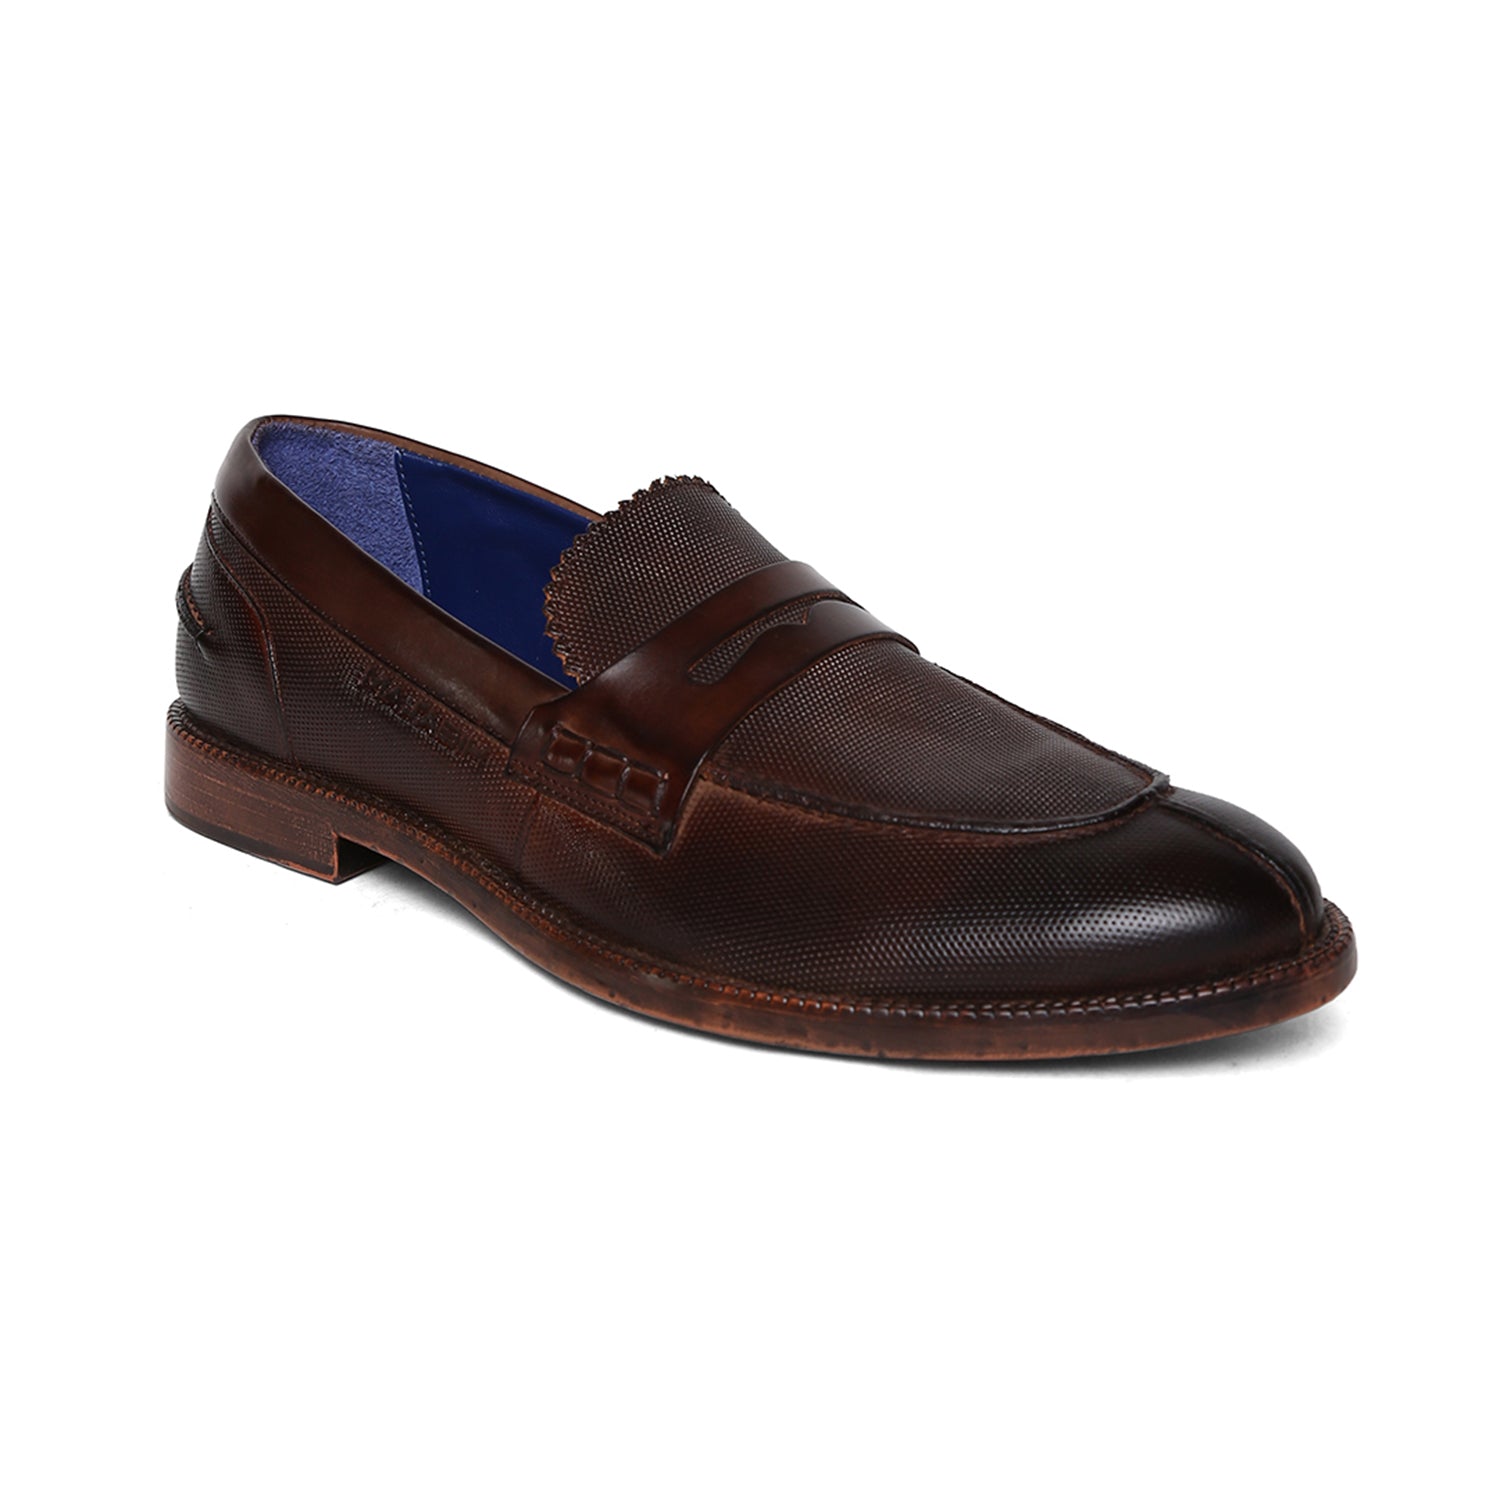 Masabih Genuine Leather Brown Loafer Slipon Shoes for Men